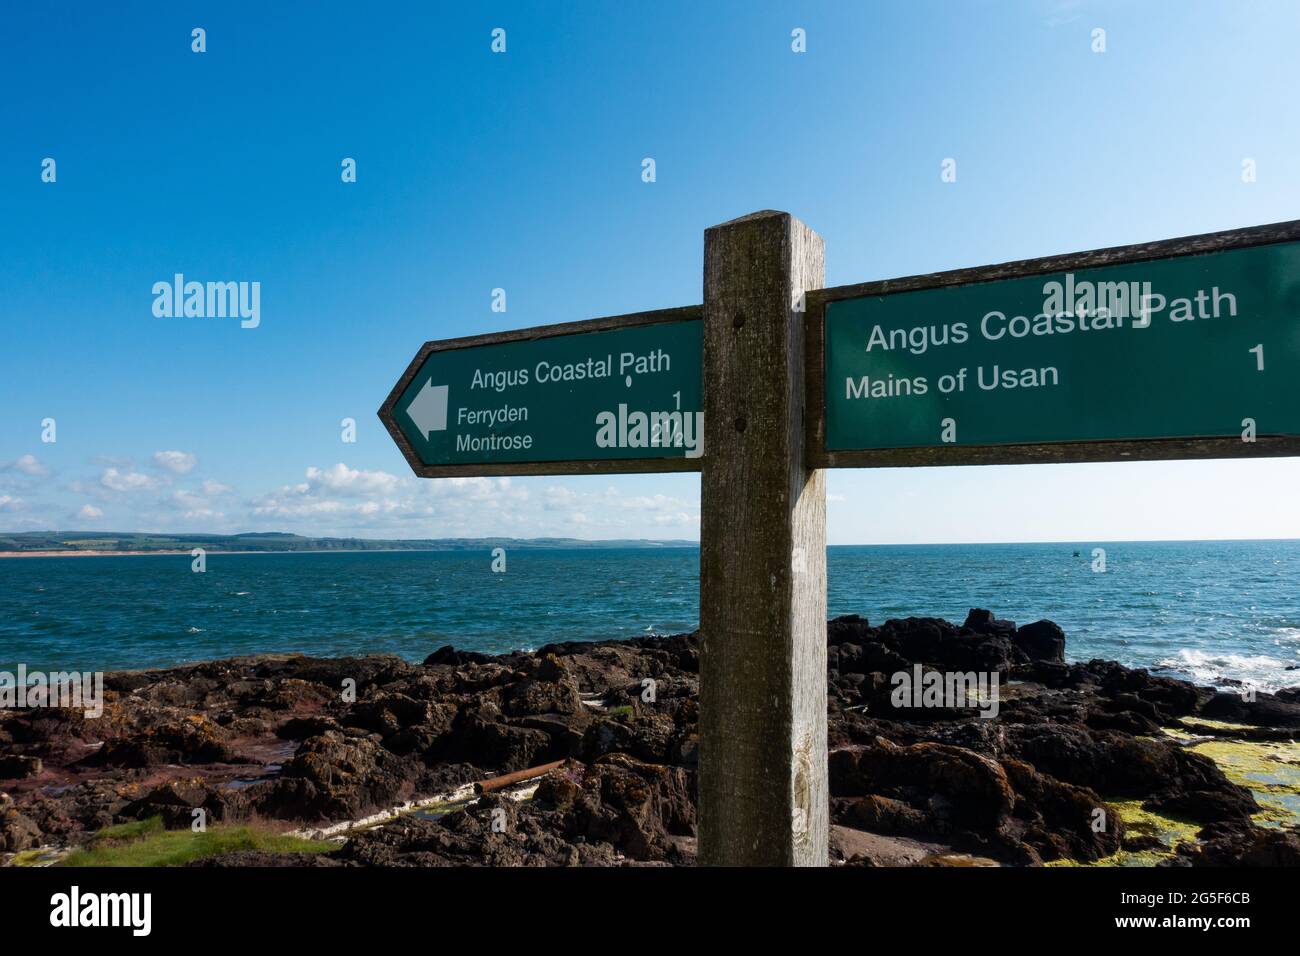 Un panneau pour le sentier côtier Angus dans la ville d'Arbroath, Angus, en Écosse, pointant vers Usan, Montrose et Ferryden Banque D'Images